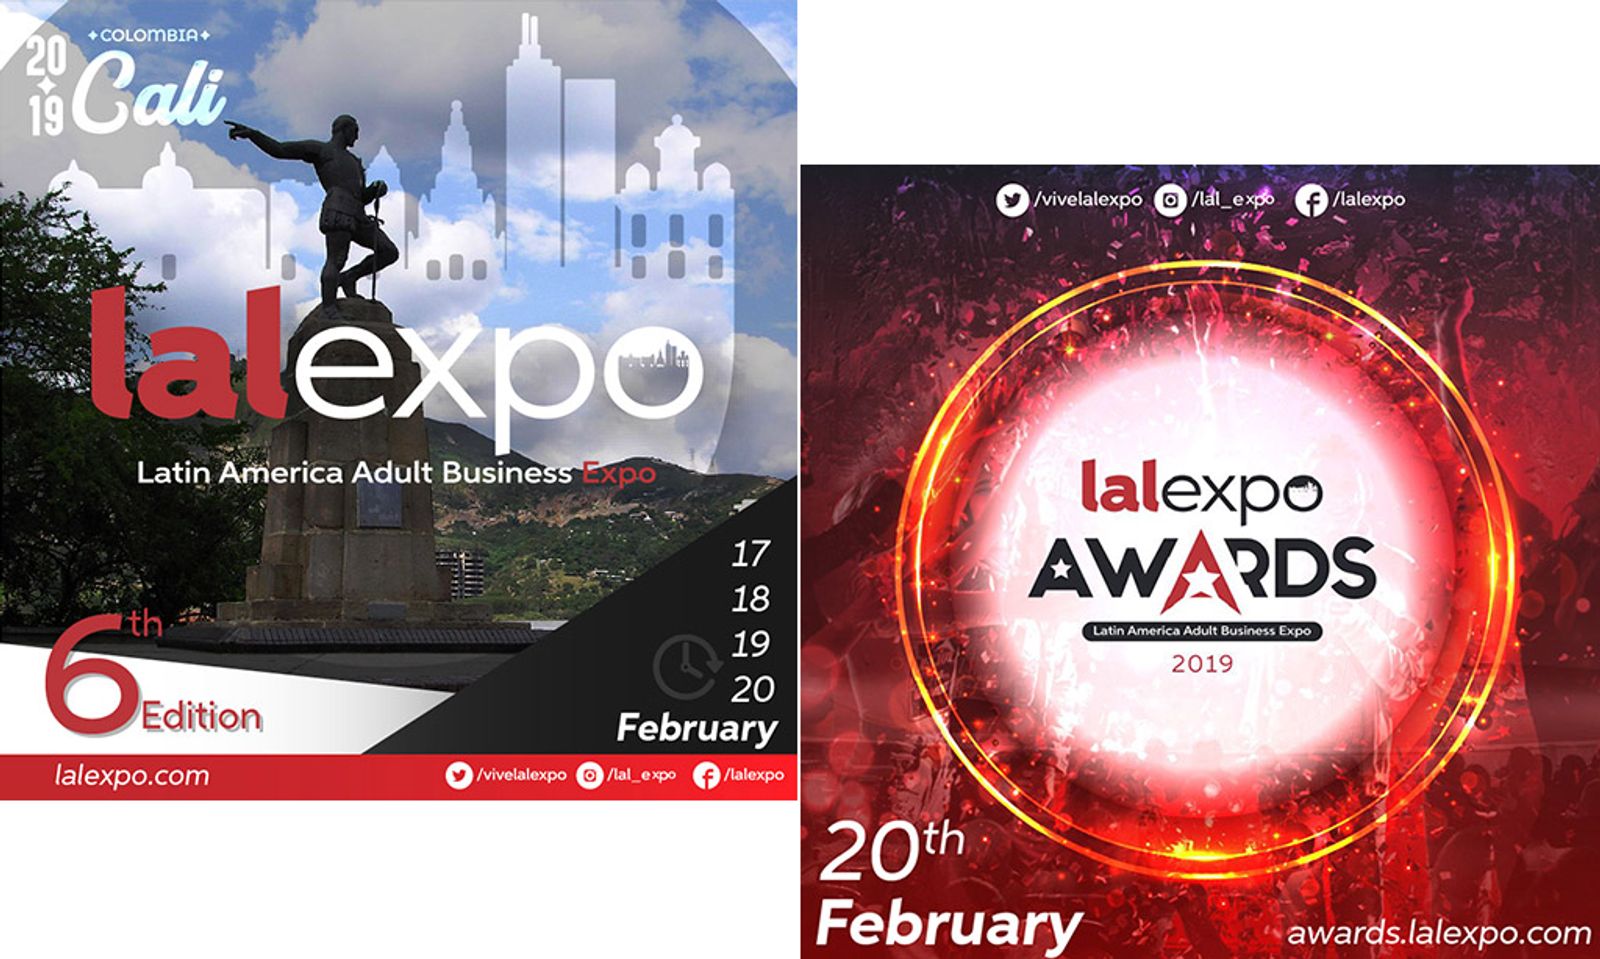 LALExpo 2019 Announces Show Hotel, Dates & Opens Awards Noms